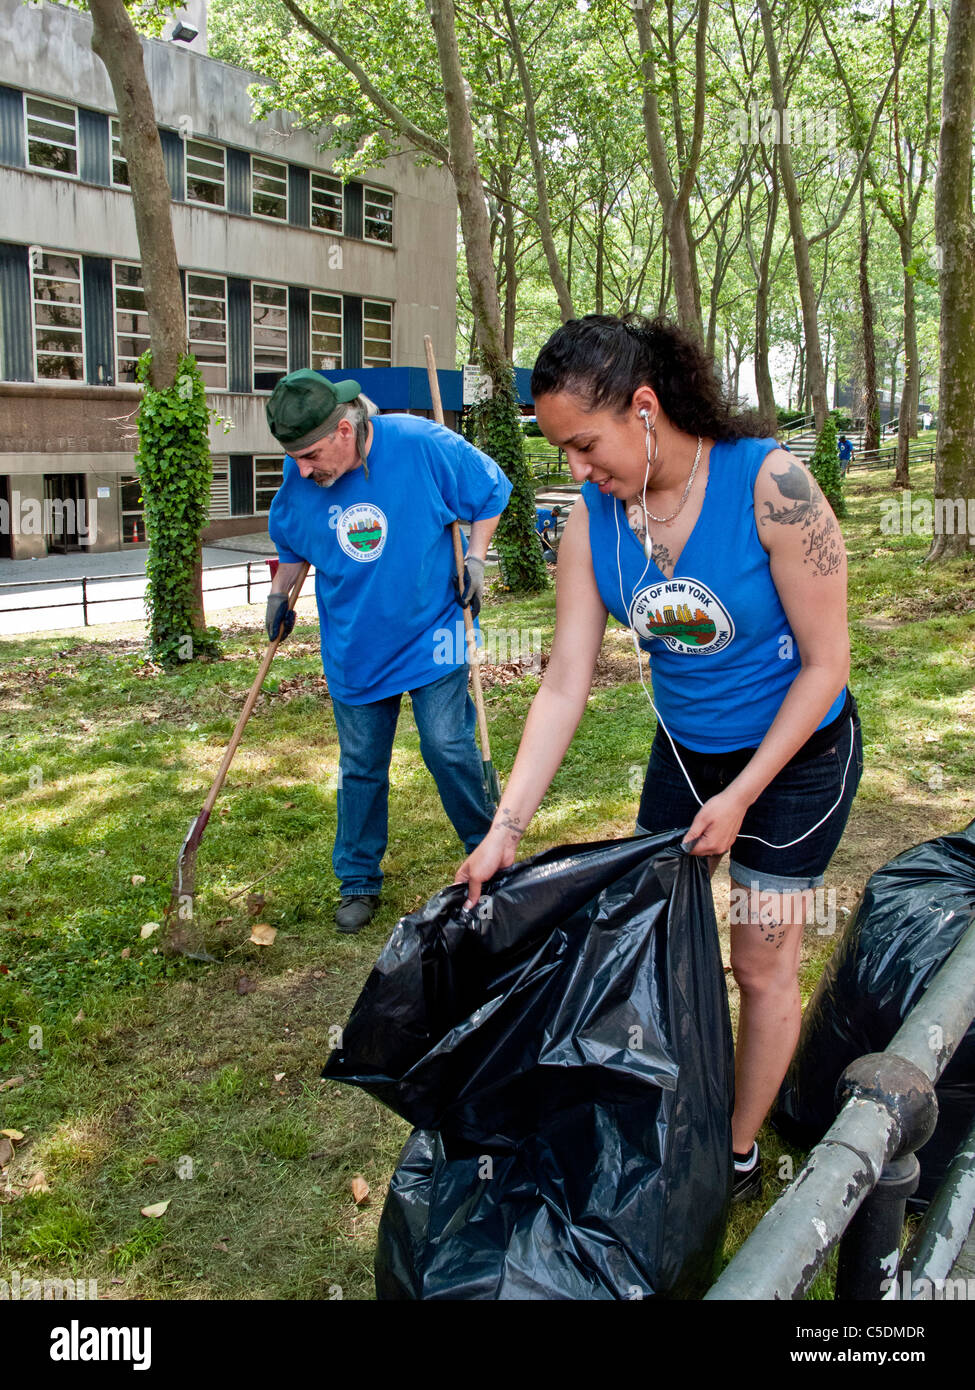 Los trabajadores sanitarios uniformados incluyendo una mujer tatuada recoger basura en Cadman Plaza, Brooklyn, NY. Foto de stock